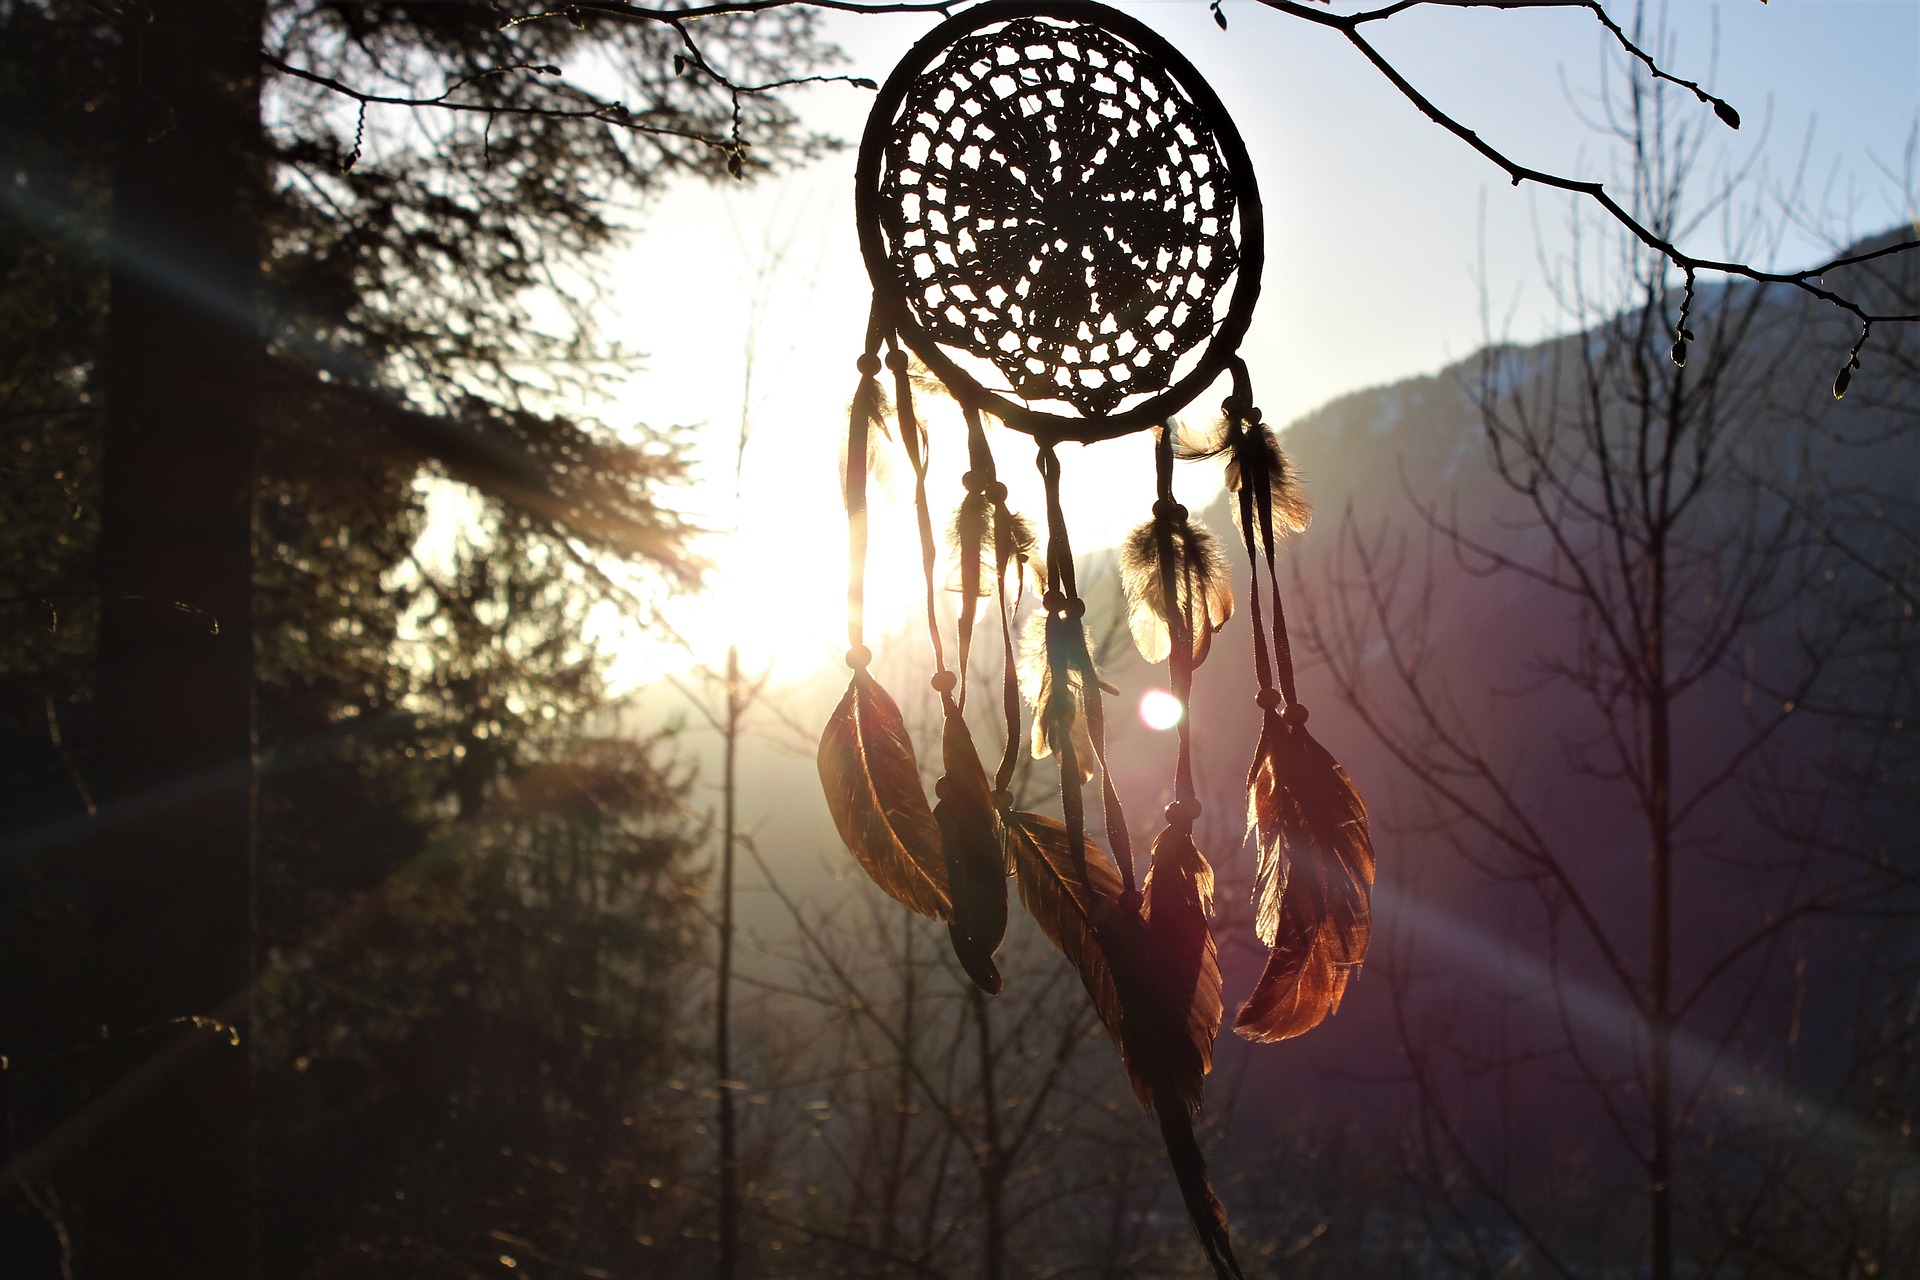 Ein Traumfänger hängt in der Abenddämmerung an einem Baum und die Federn werden vom Wind bewegt. Das idyllische Foto zeigt den Traumfänger im Wald und vermittelt eine mystische Atmosphäre.